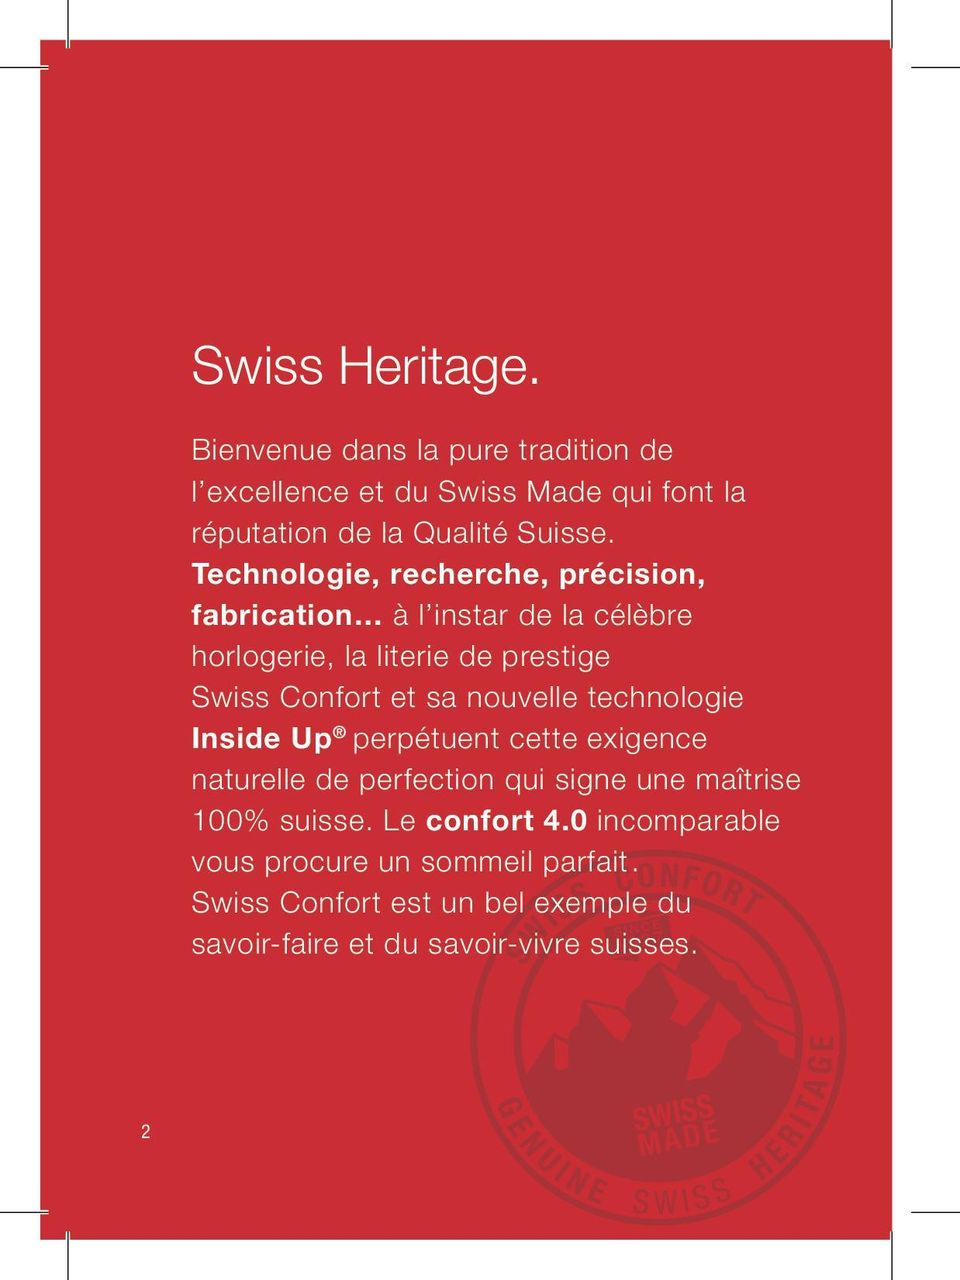 nouvelle technologie Inside Up perpétuent cette exigence naturelle de perfection qui signe une maîtrise 100% suisse.